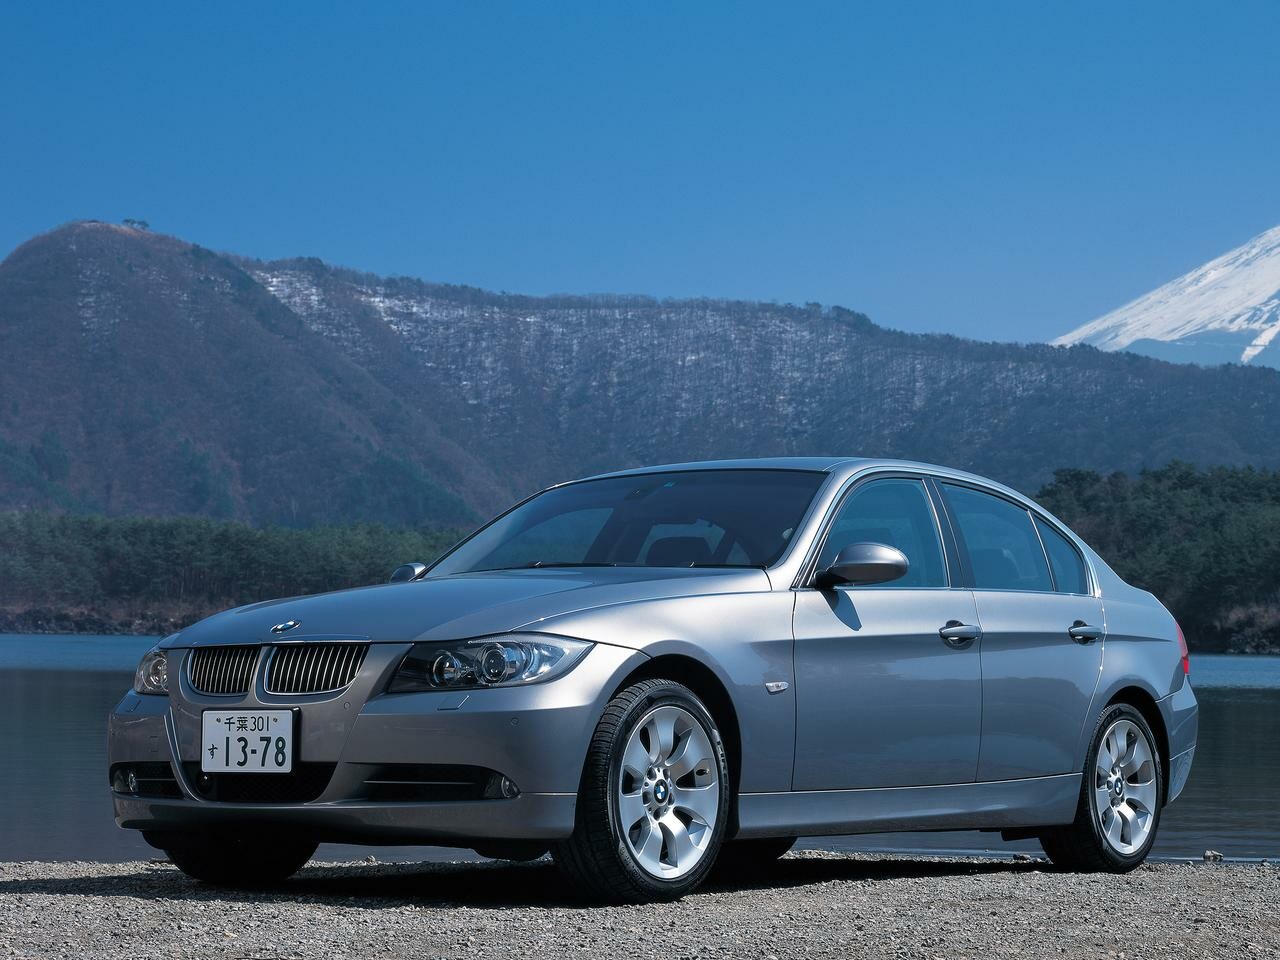 【ヒットの法則29】E90型BMW 3シリーズの進化幅は大きく、Dセグメントで不動のベンチマークに